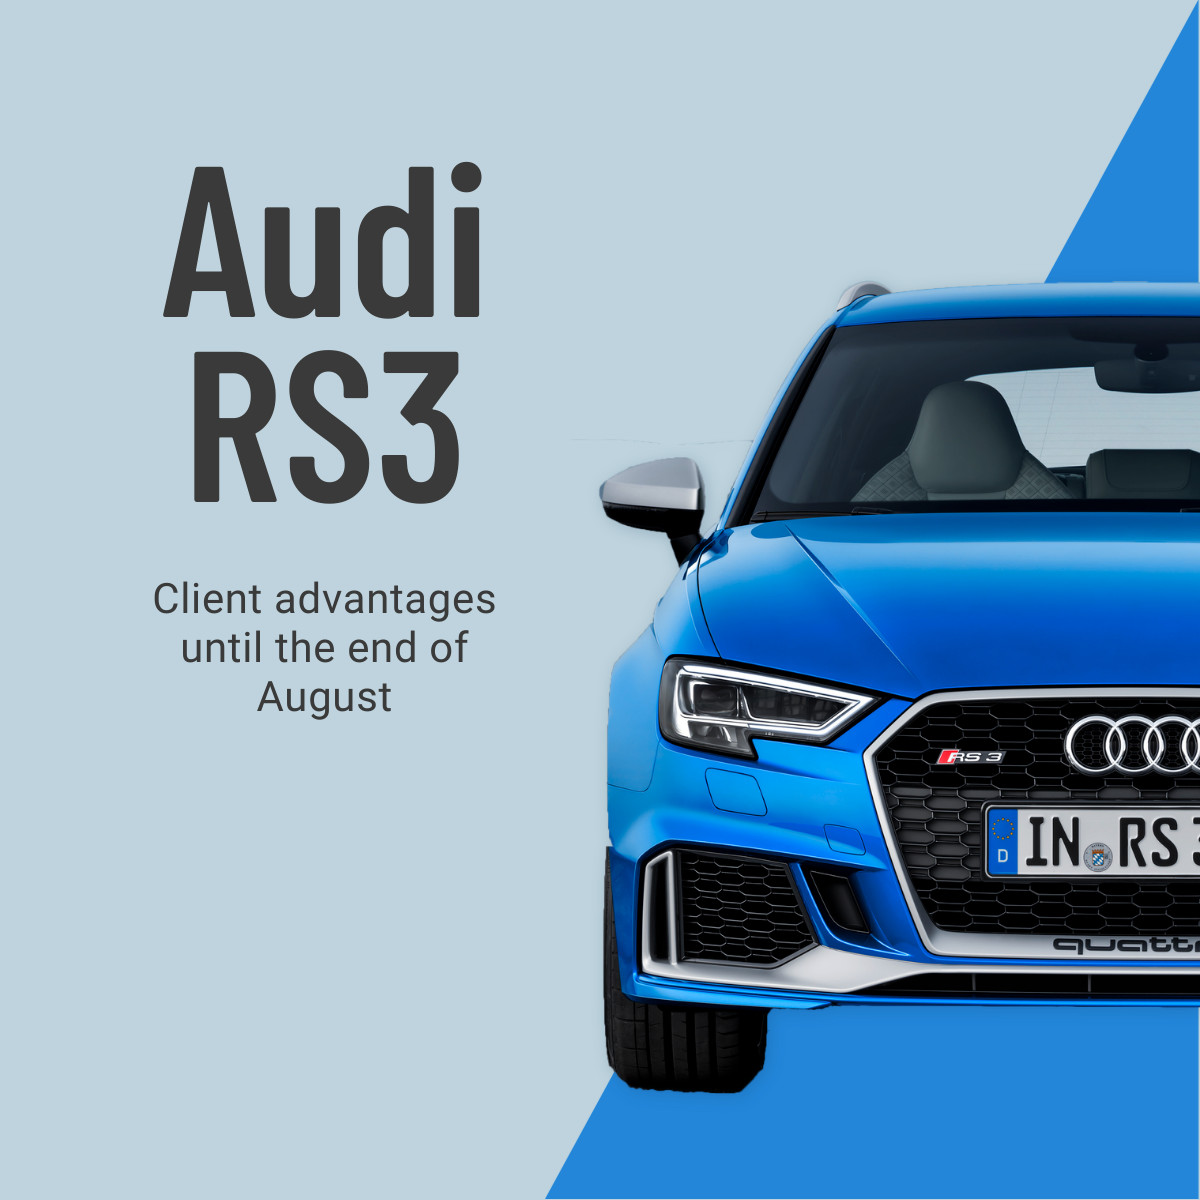 Audi RS3 Client Advantage Car Deals 